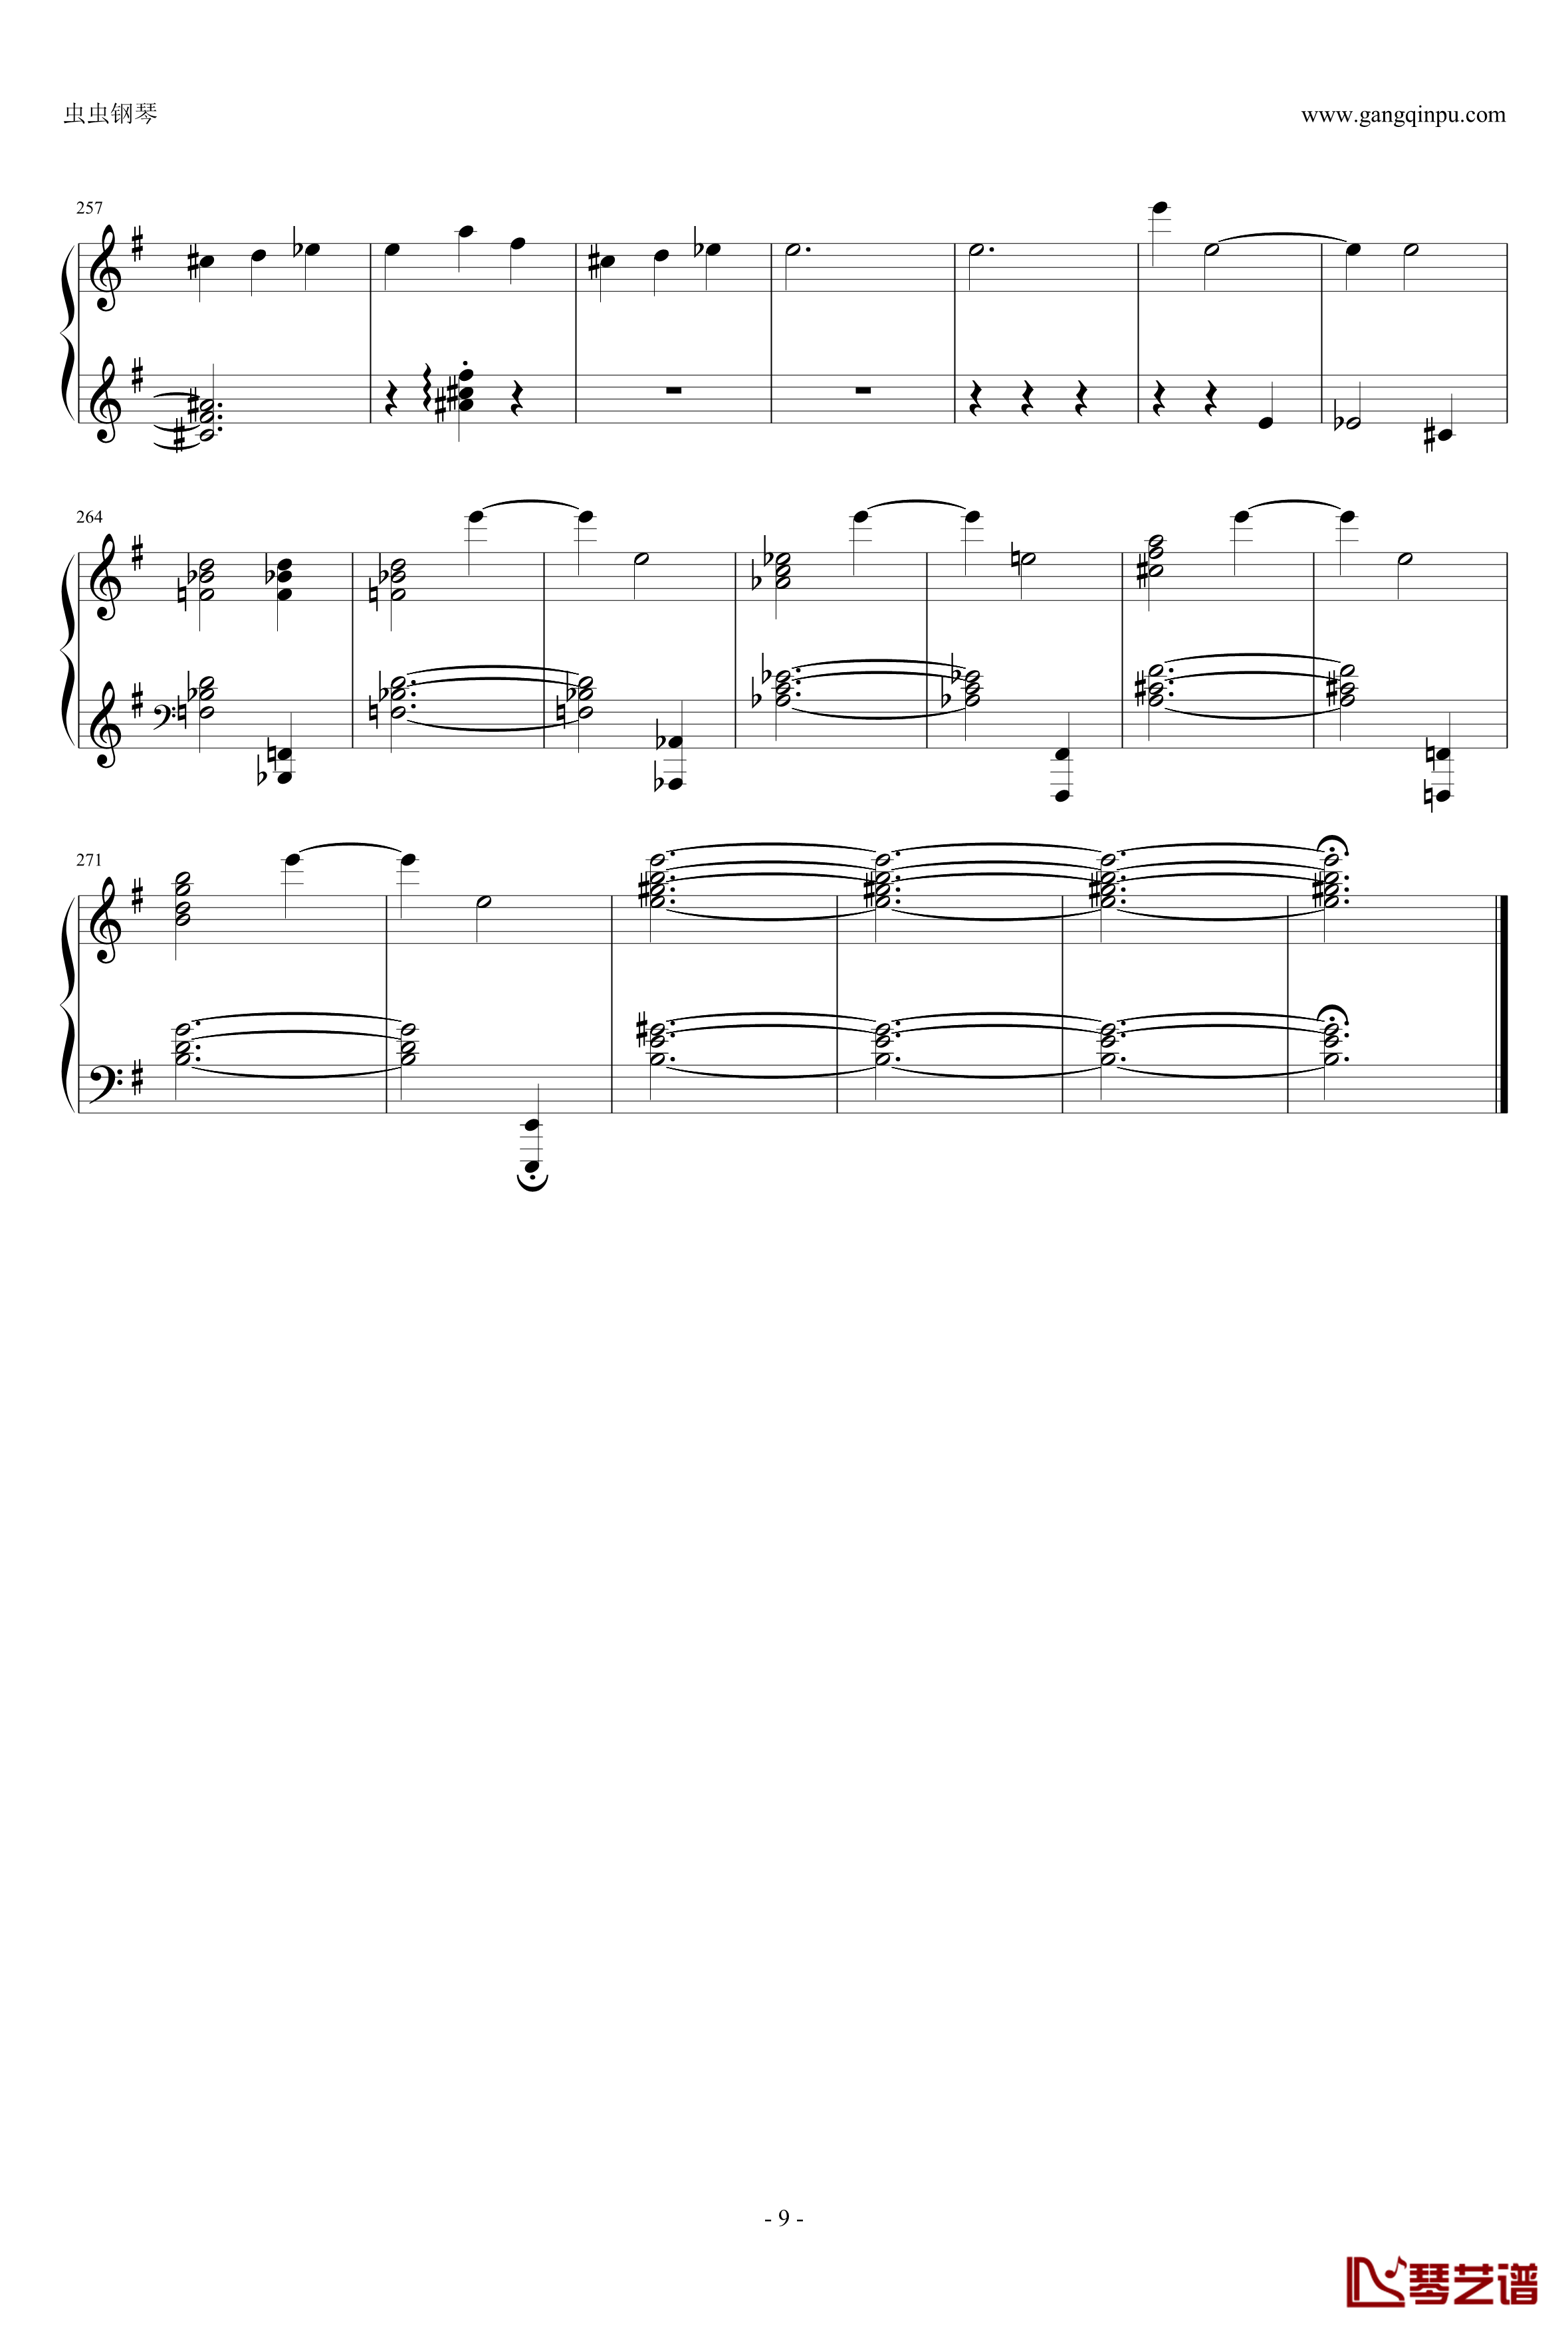 圆舞曲钢琴谱-灰姑娘-普罗科非耶夫9